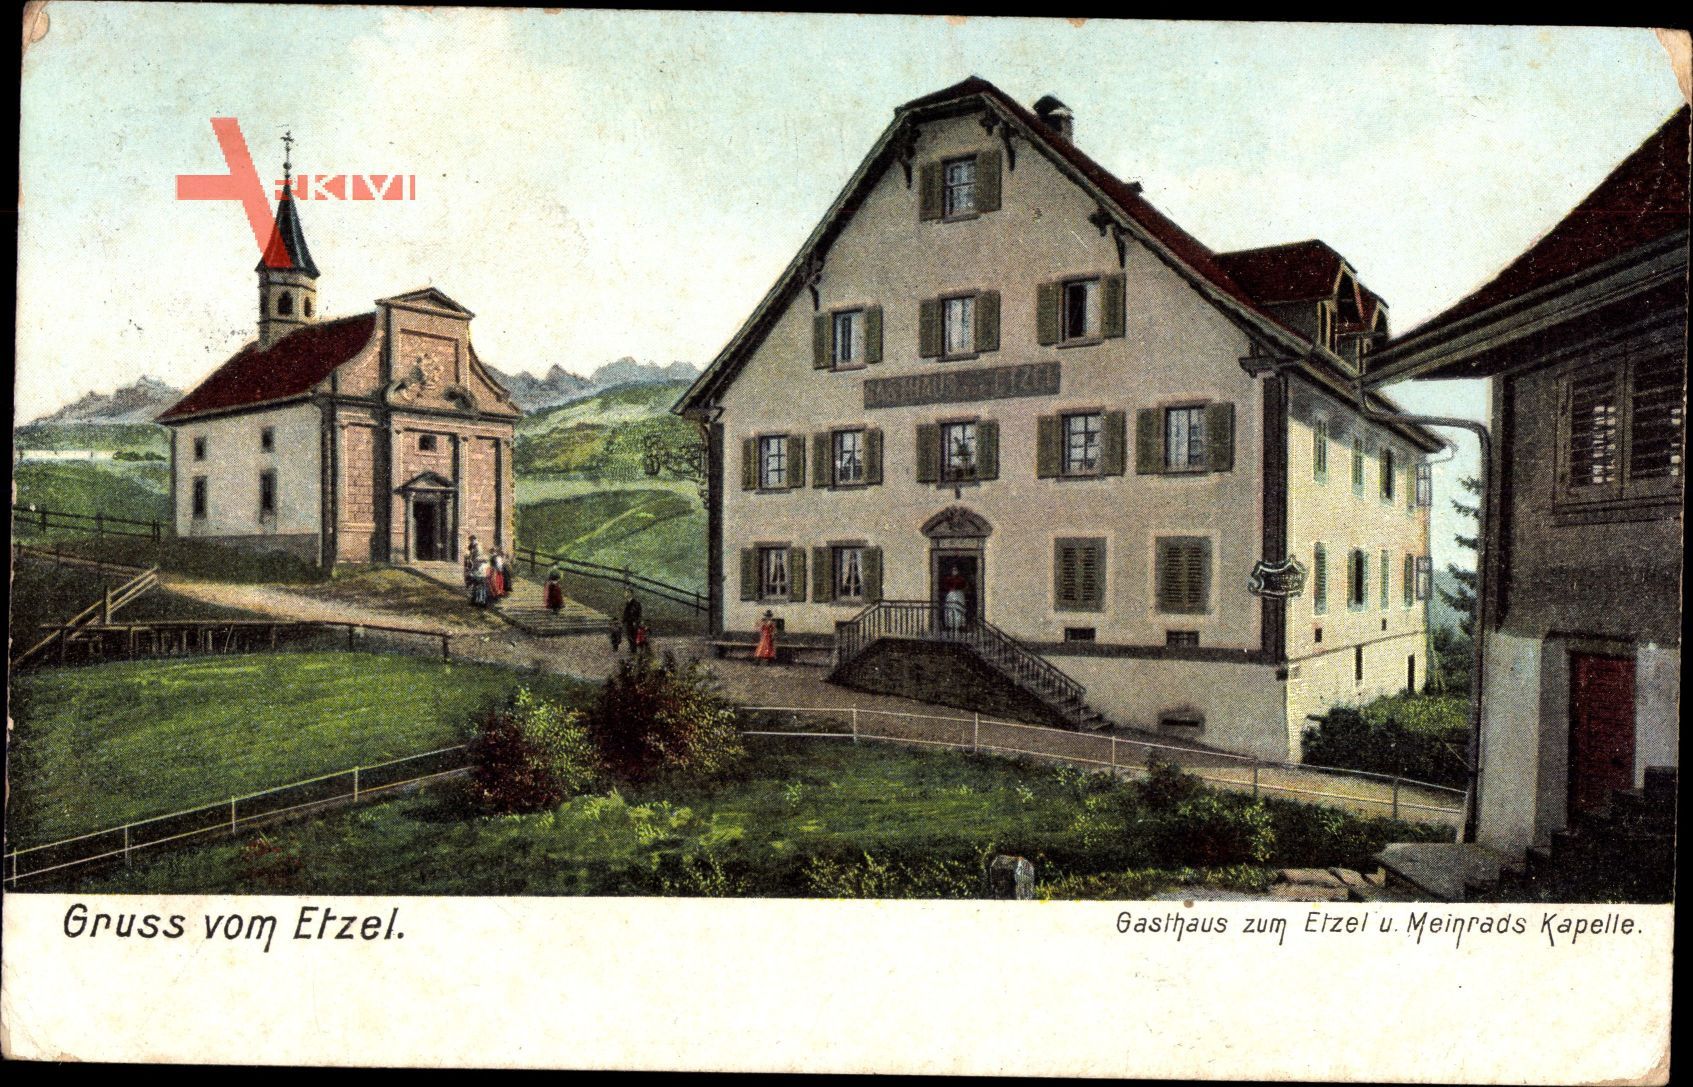 Etzel Kt. Schwyz, Gasthaus zum Etzel und Meinrads Kapelle